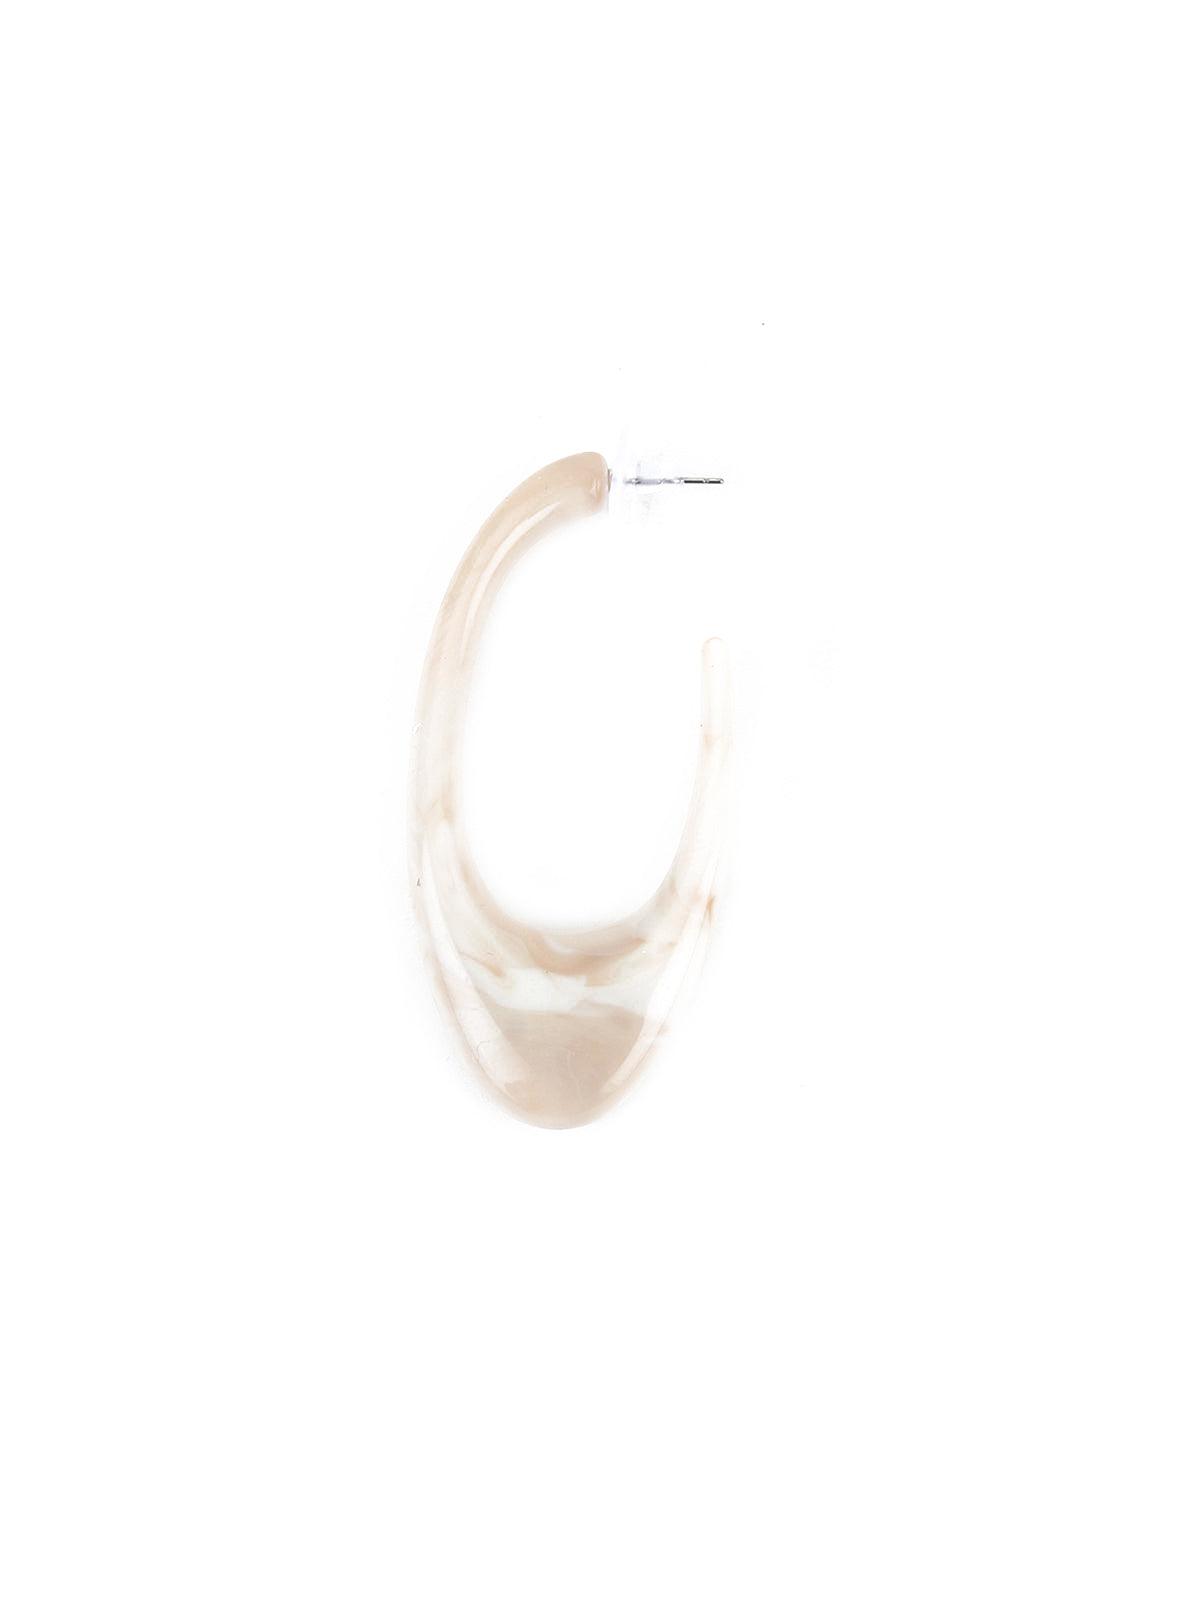 Ivory Marbleized Open Hoop Earrings - Odette